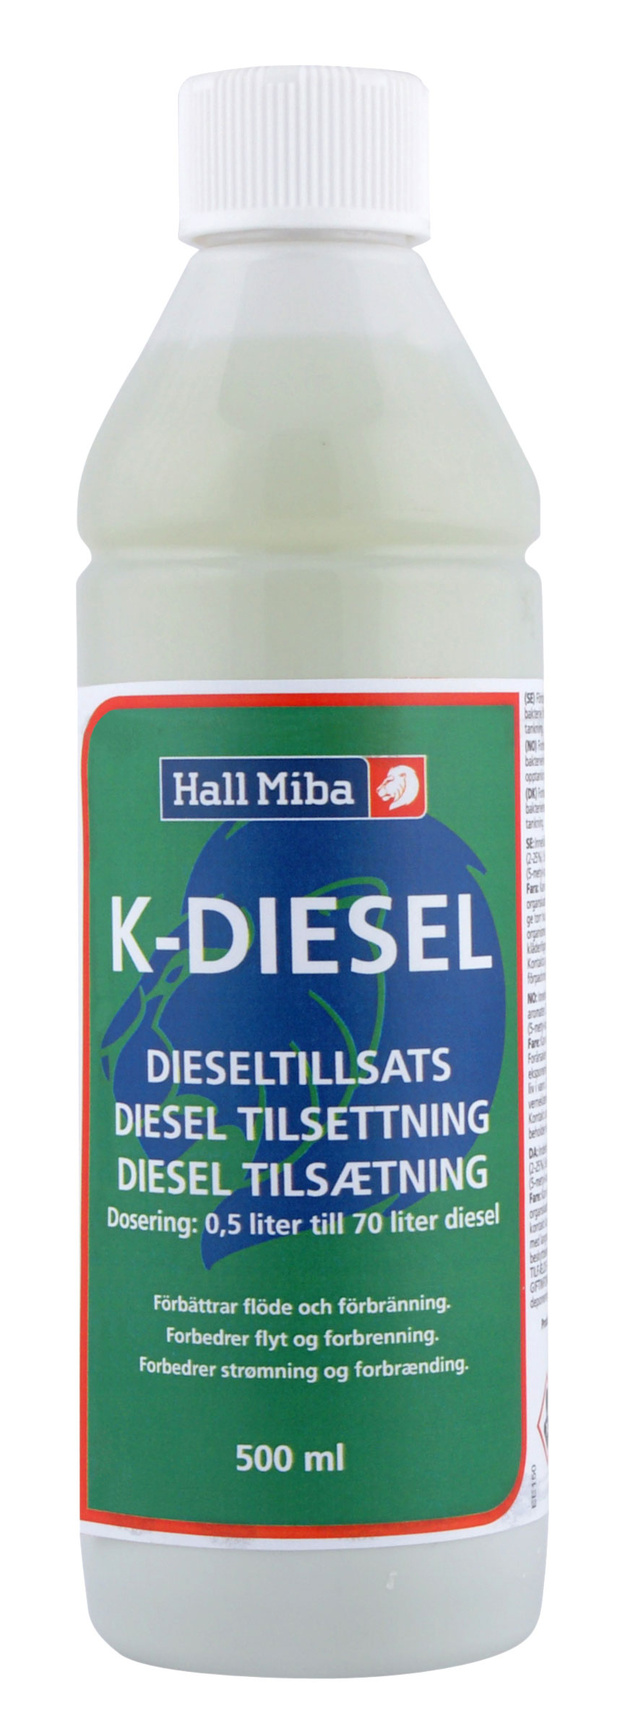 Bränsletillsats K-Diesel 500 ml